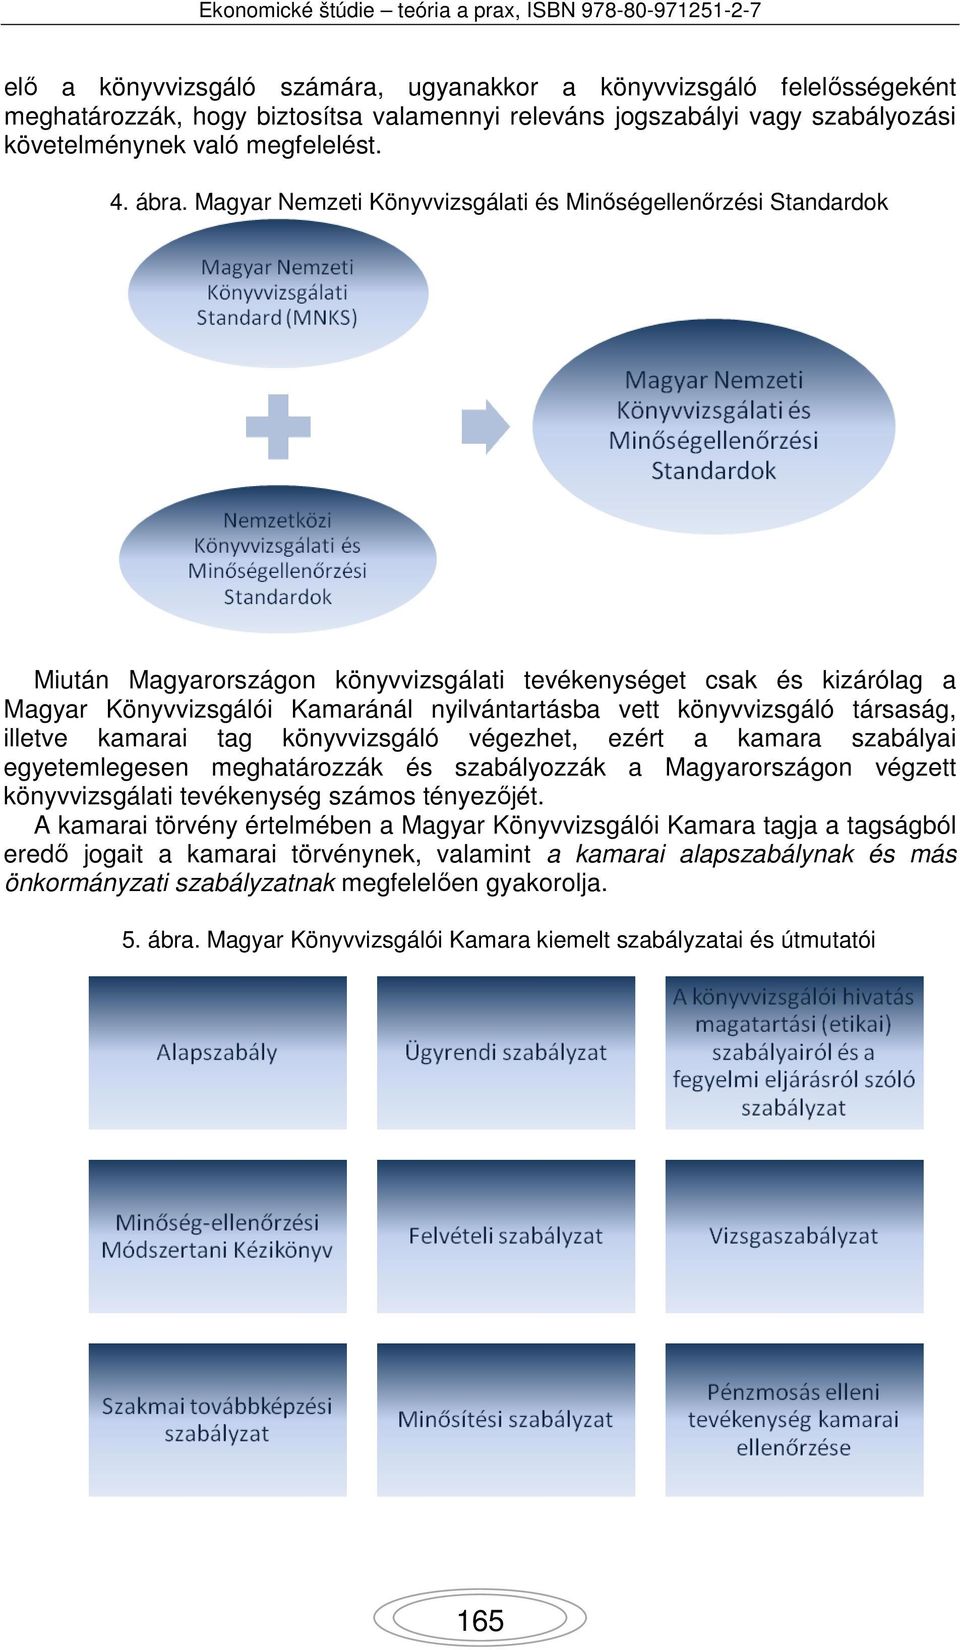 könyvvizsgáló társaság, illetve kamarai tag könyvvizsgáló végezhet, ezért a kamara szabályai egyetemlegesen meghatározzák és szabályozzák a Magyarországon végzett könyvvizsgálati tevékenység számos